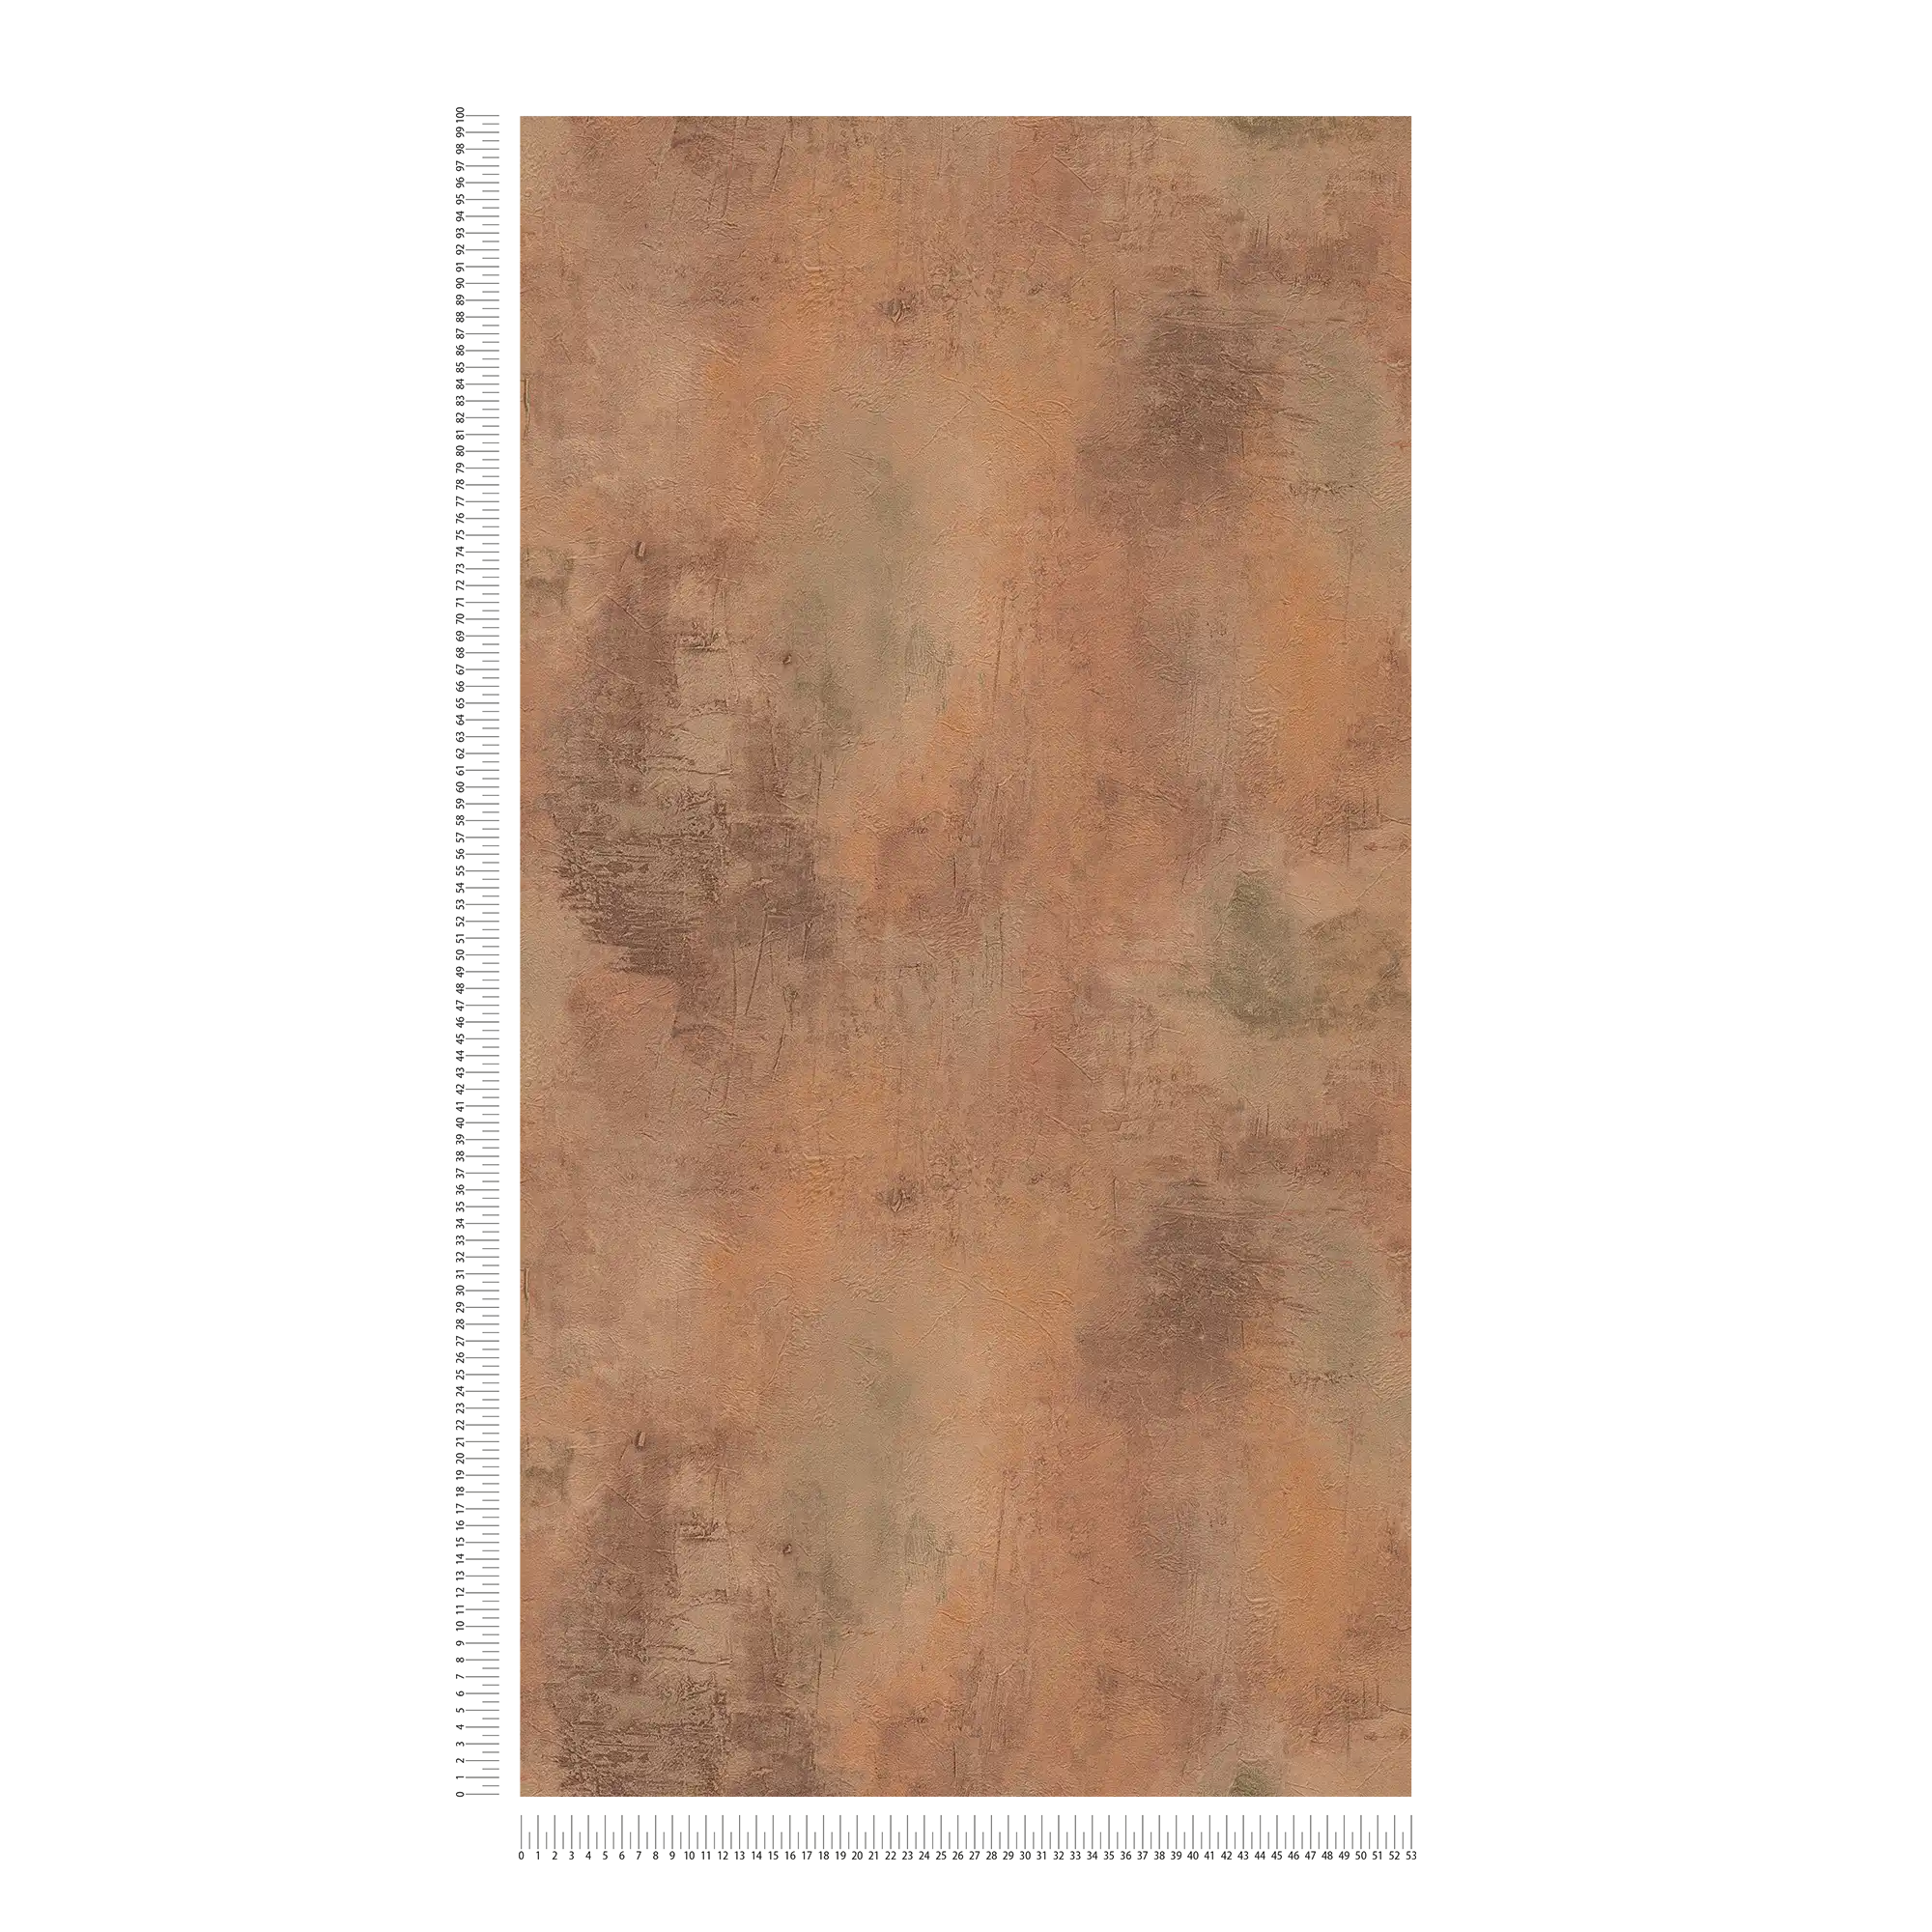             Behang met roestpatroon en metallic look - bruin, oranje, grijs
        